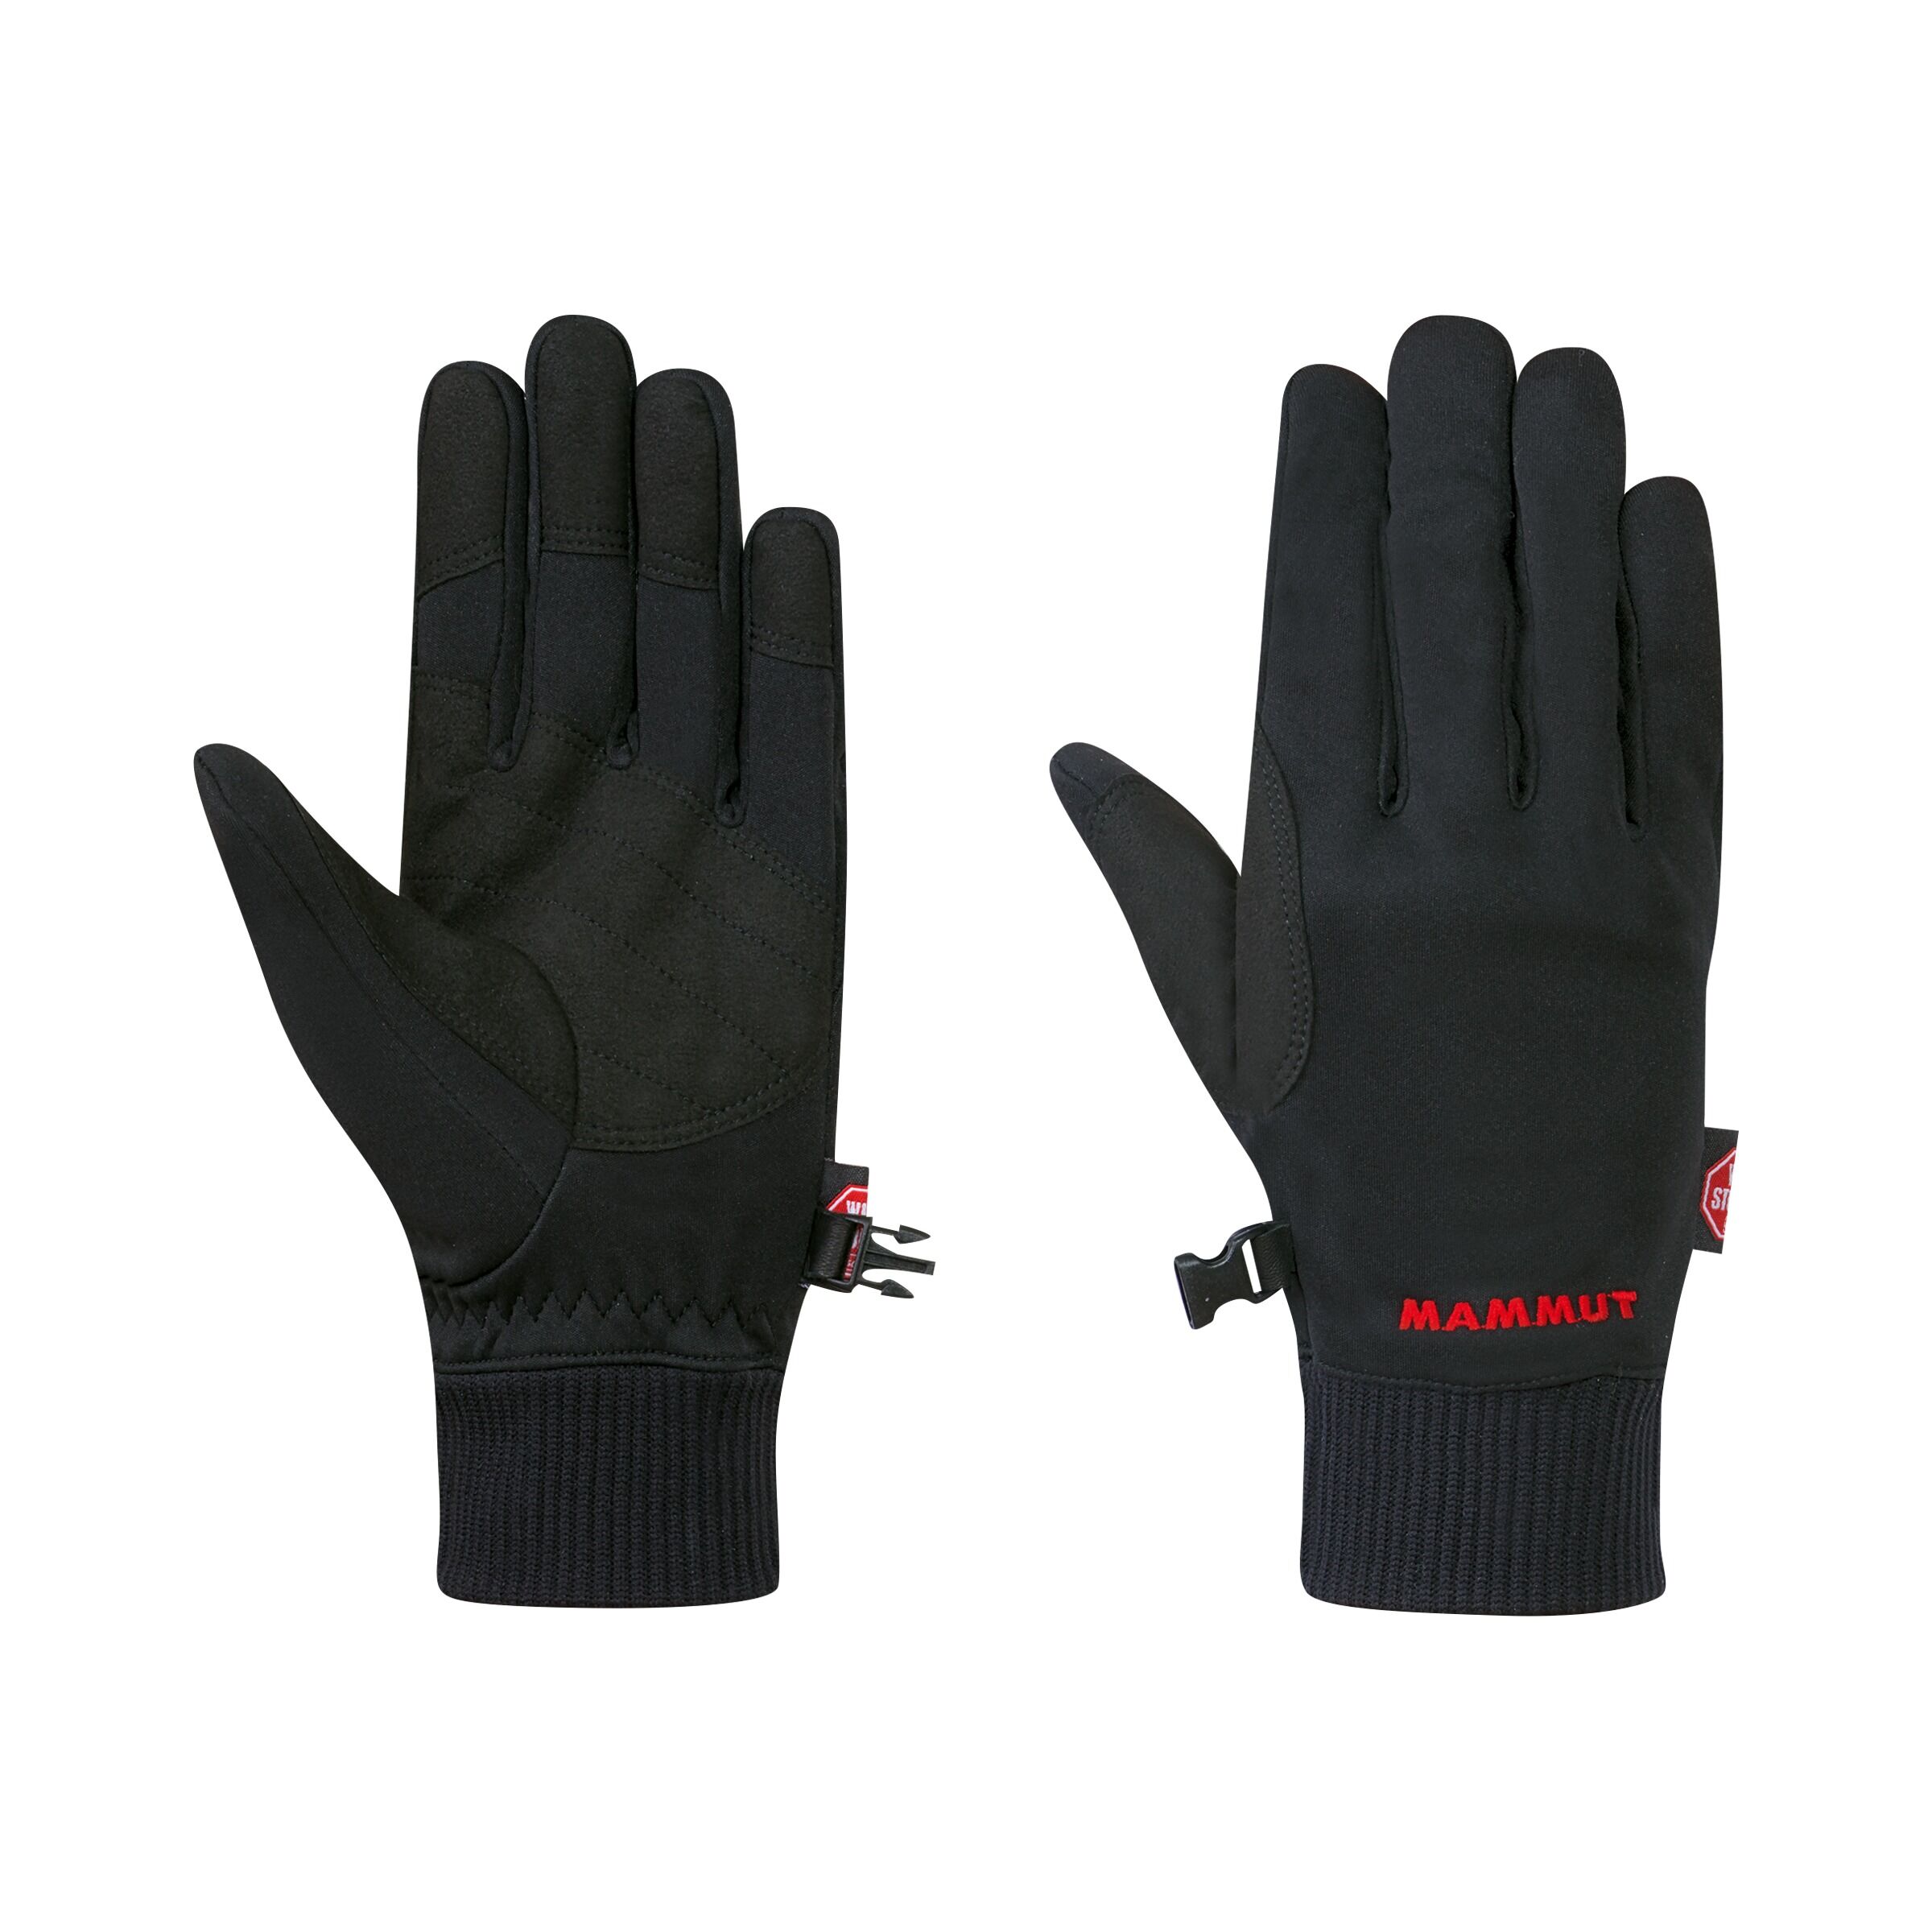 Mammut - Astro Glove - Gloves